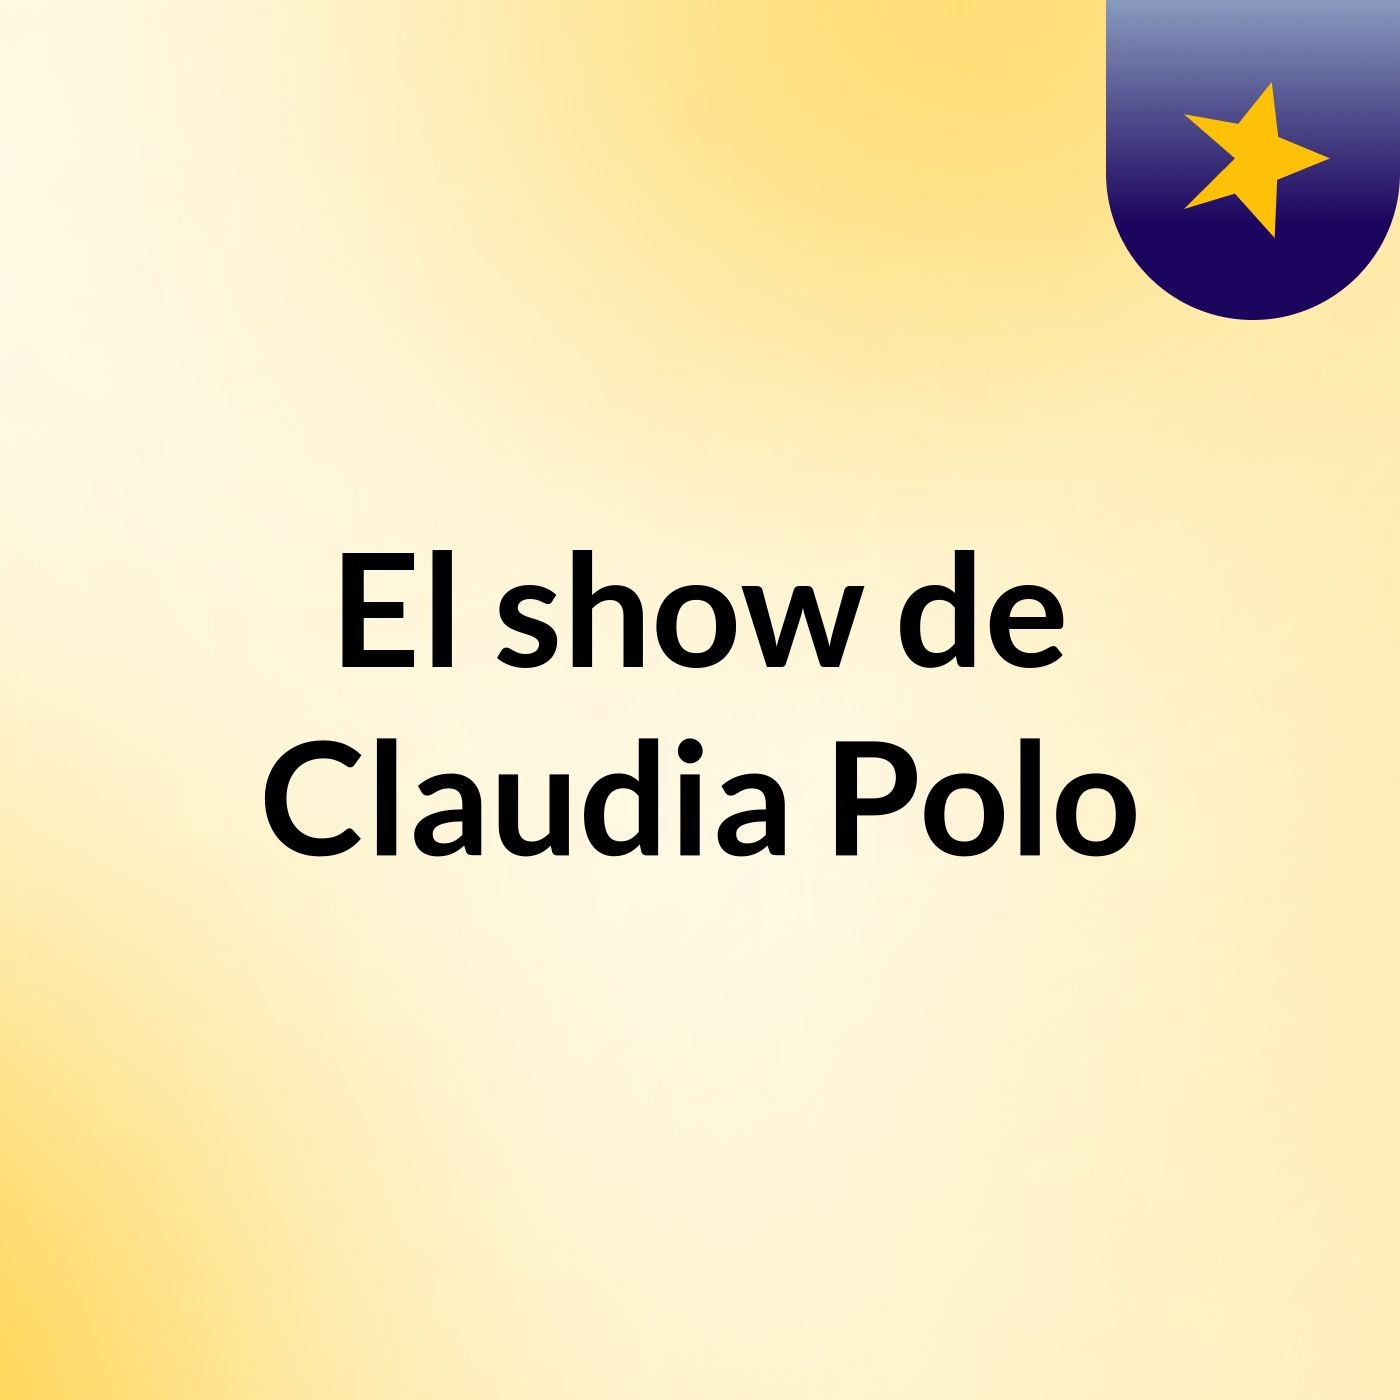 El show de Claudia Polo